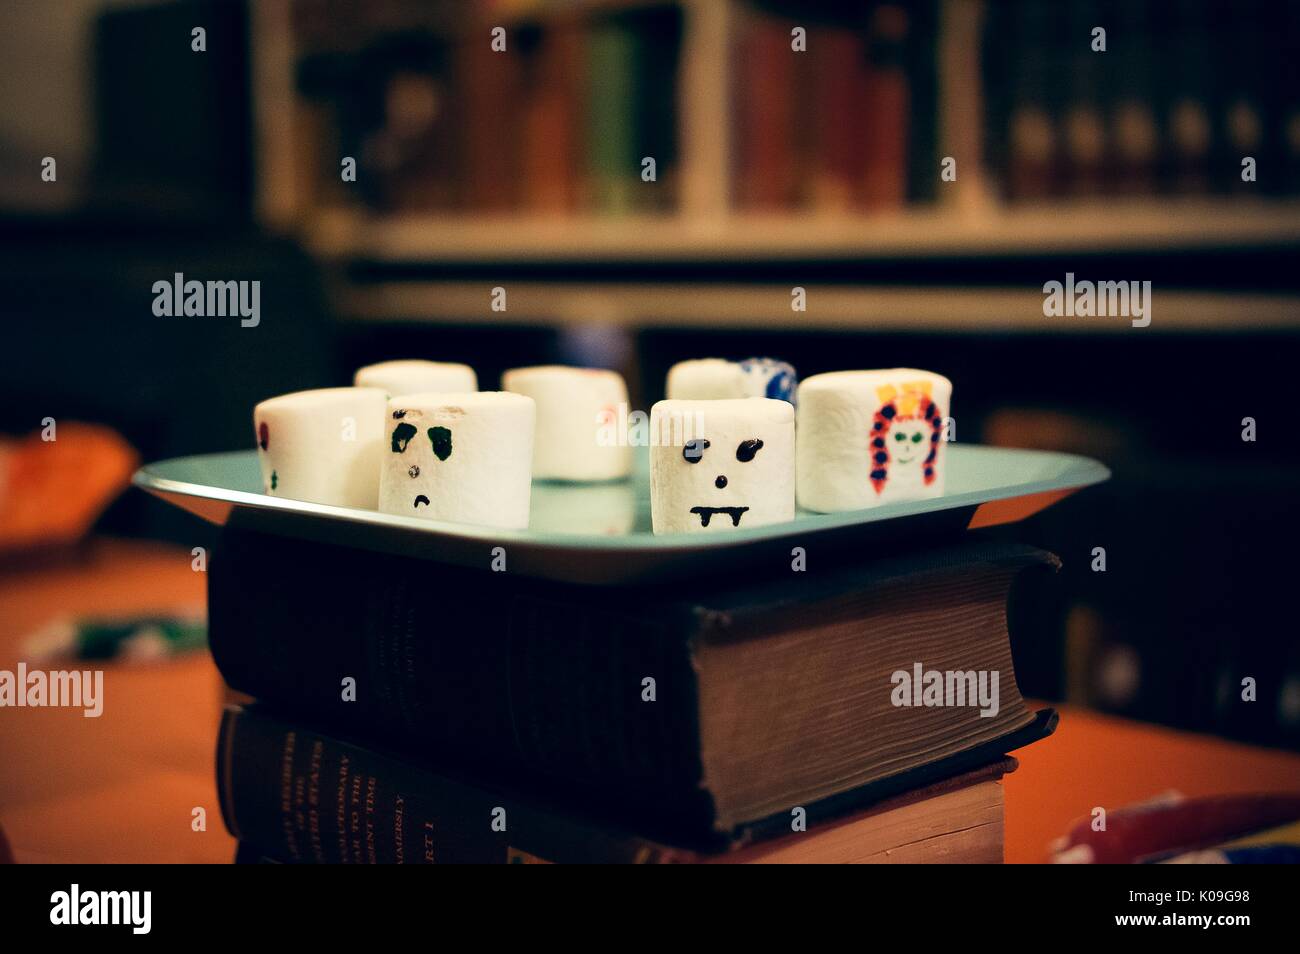 Groß dekoriert Marshmallows auf einem Platz, der auf einem Stapel von Büchern ist, Halloween an der Johns Hopkins University's George Peabody Library, 2015. Mit freundlicher Genehmigung von Eric Chen. Stockfoto